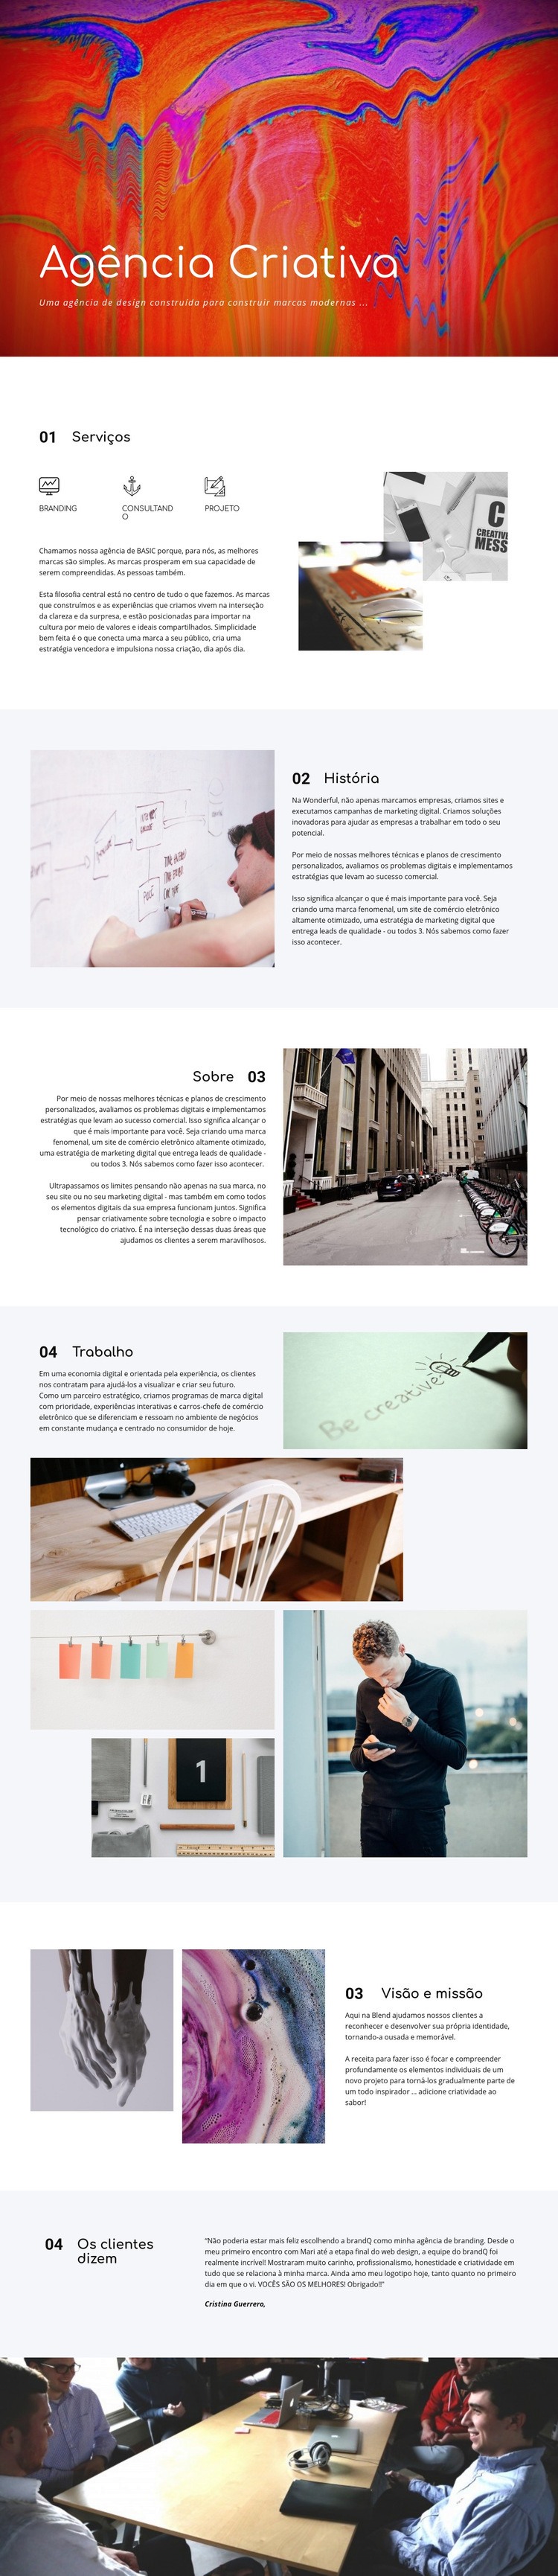 Galeria criativa Landing Page